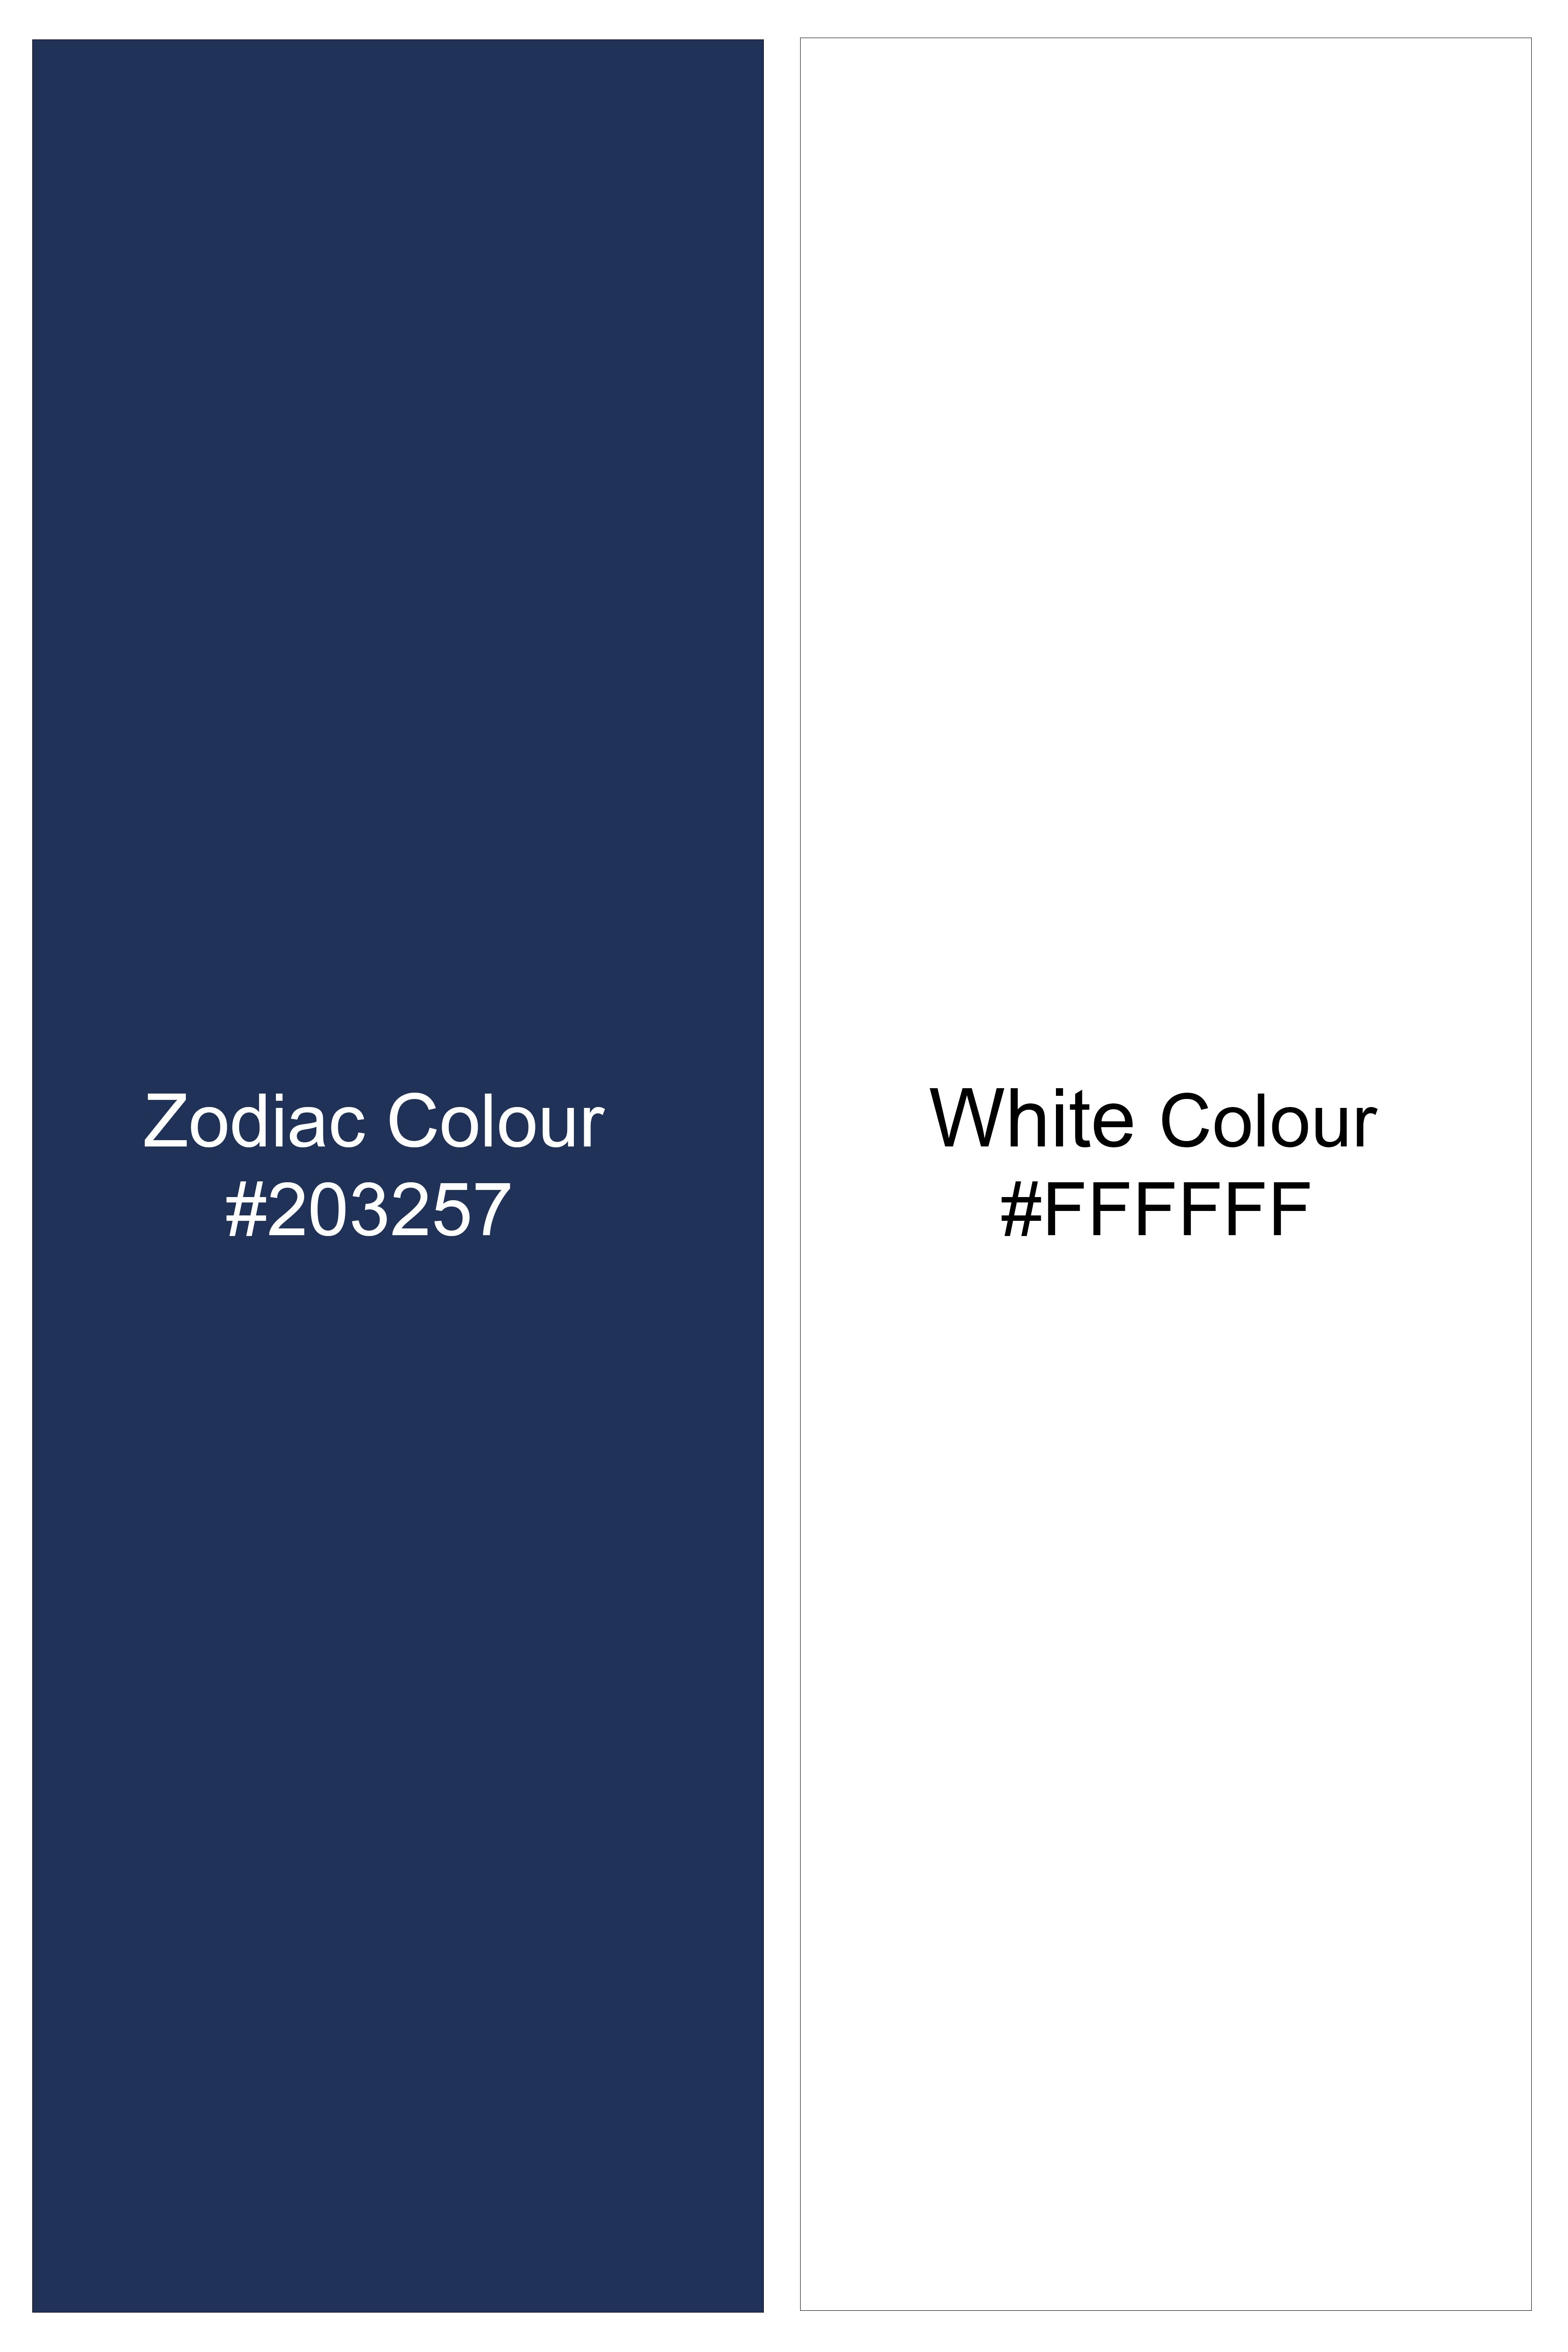 Bright White and Zodiac Blue Print Super Soft Premium Cotton Shirt